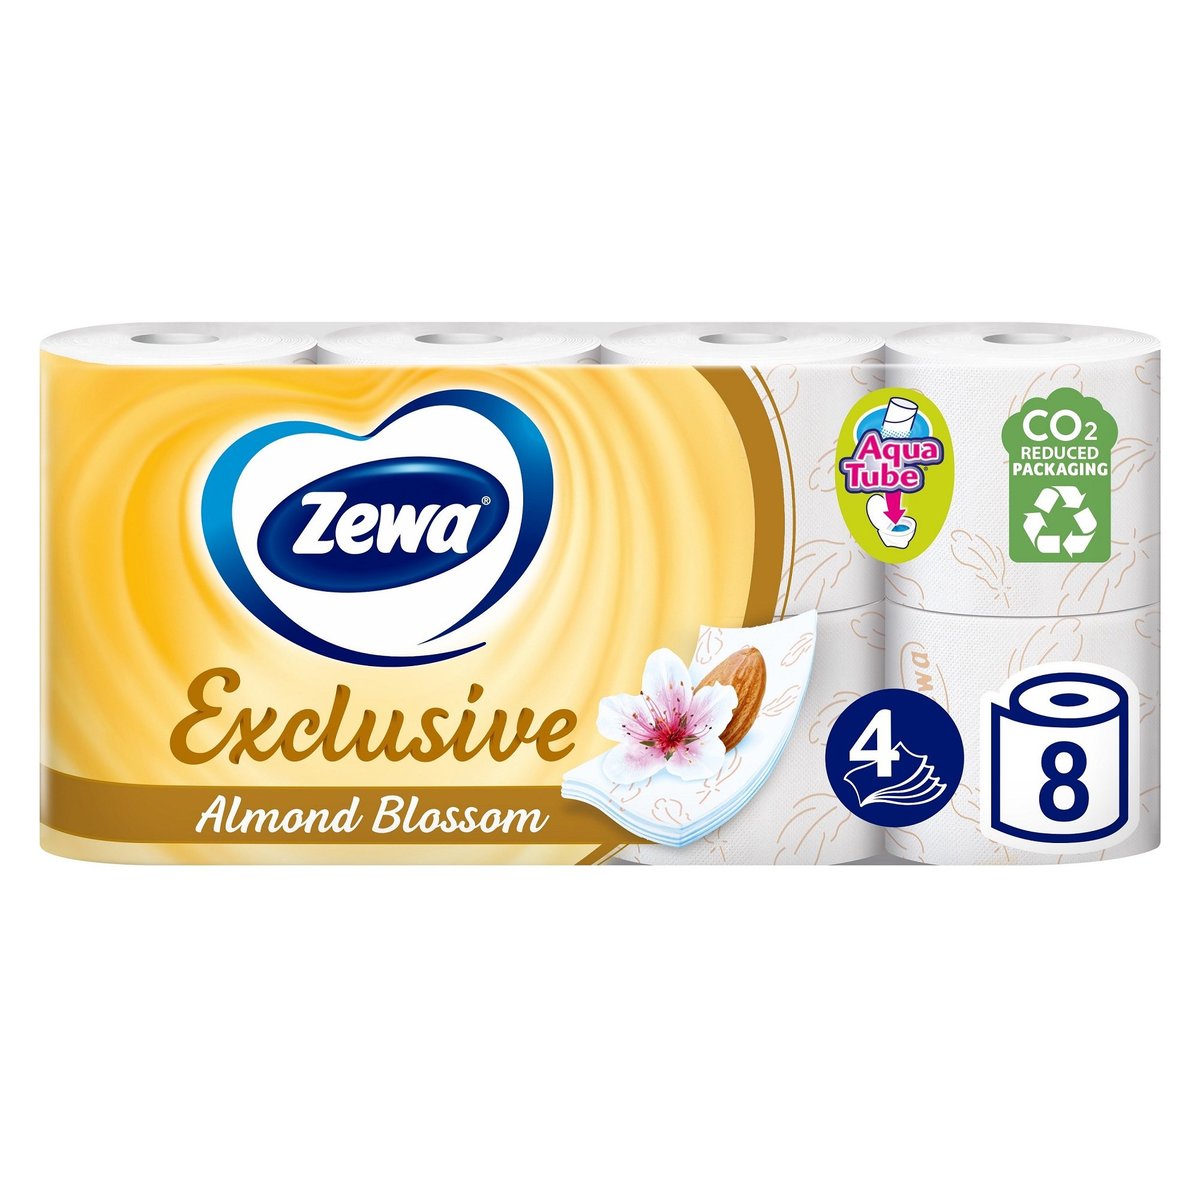 Zewa Exclusive Almond Blossom toaletní papír 4vrstvý, 8 ks